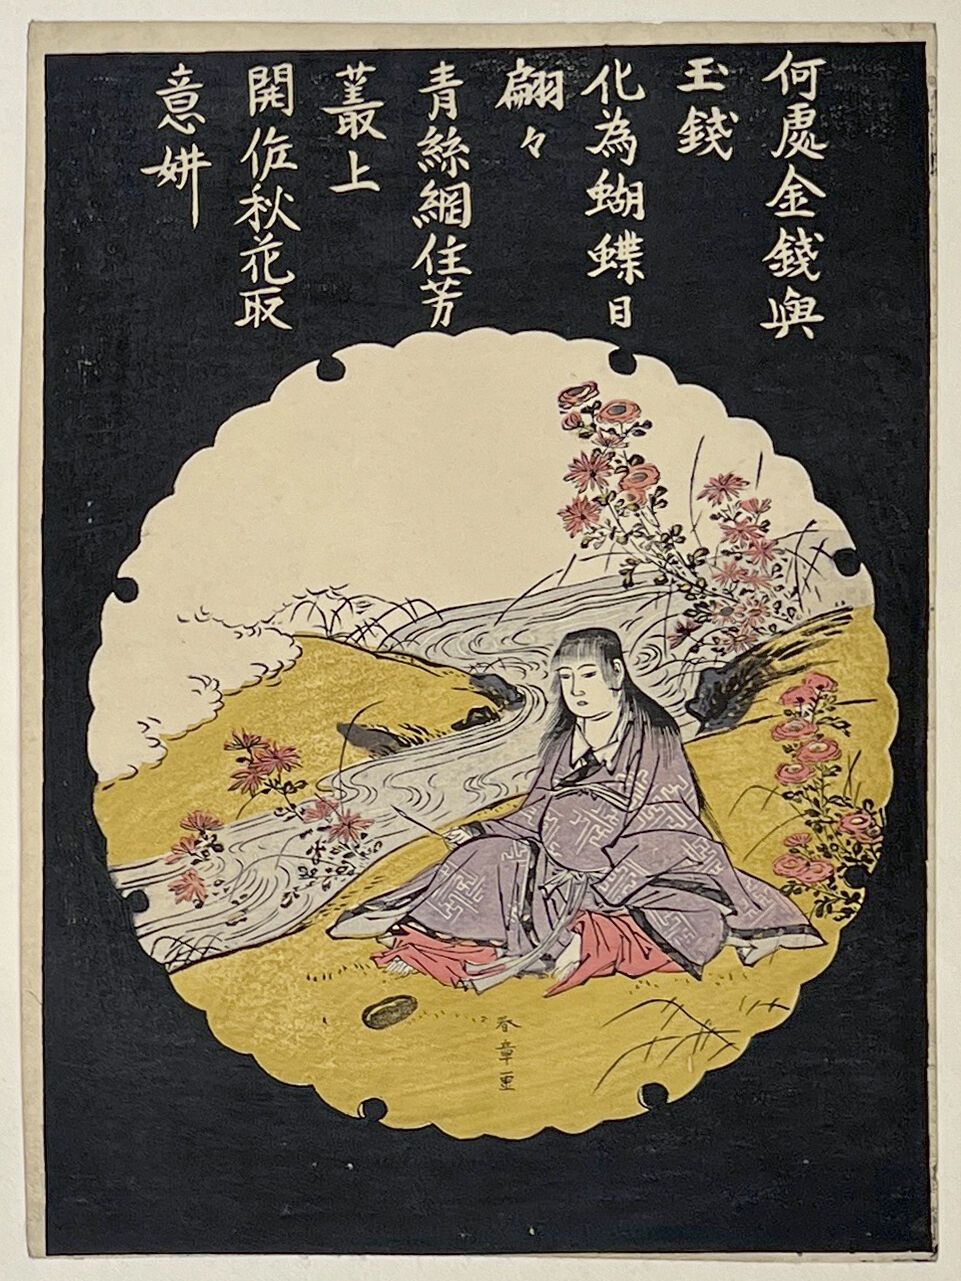 Null 胜川顺昌 (1726-1793)
细扁担》，诗人坐在河边，手握毛笔，身着聚宝盆，黑色背景上装饰着一首诗，将金钱和玉石的空虚比作蝴蝶和花朵的飞翔。 
签&hellip;